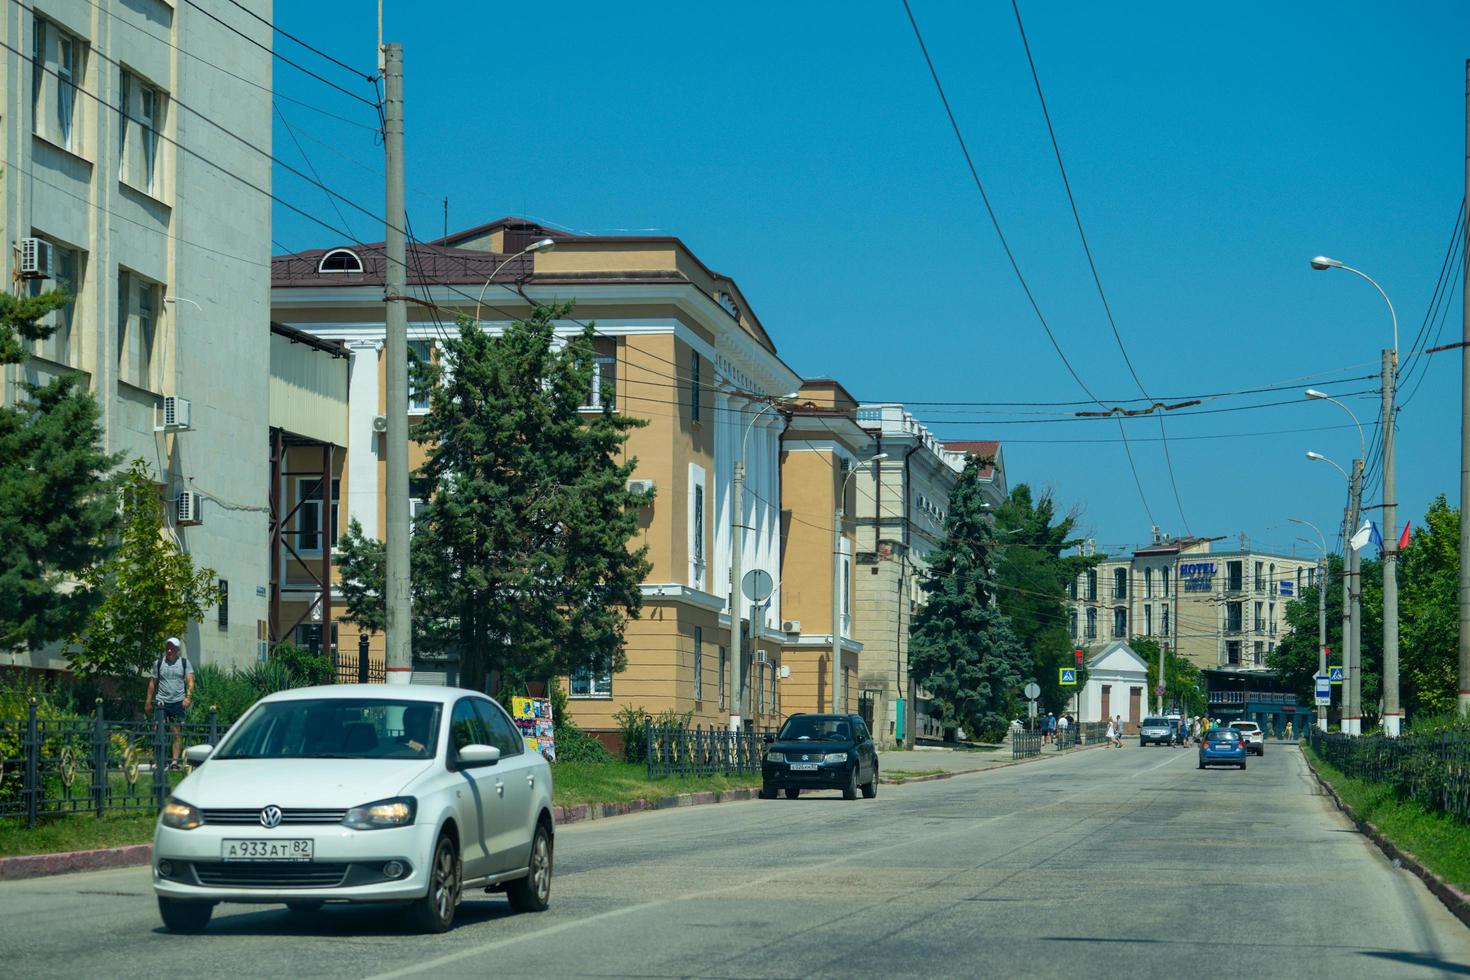 kerk, Krim - juli 31, 2022 stedelijk landschap met straten en vervoer. foto